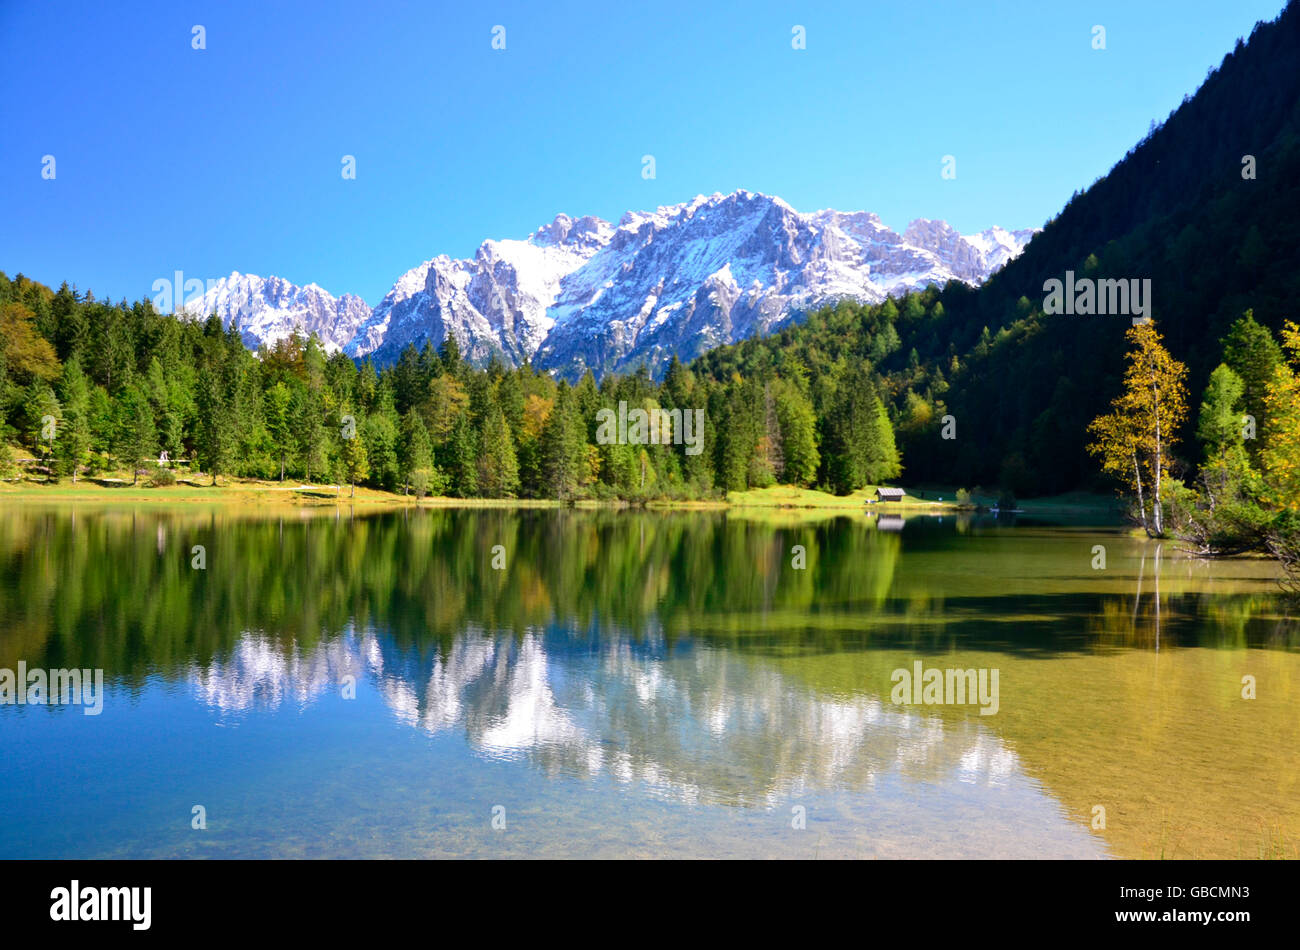 Bergsee, Karwendelgebirge, Ferchensee, Isartal, Oberbayern, Deutschland Banque D'Images